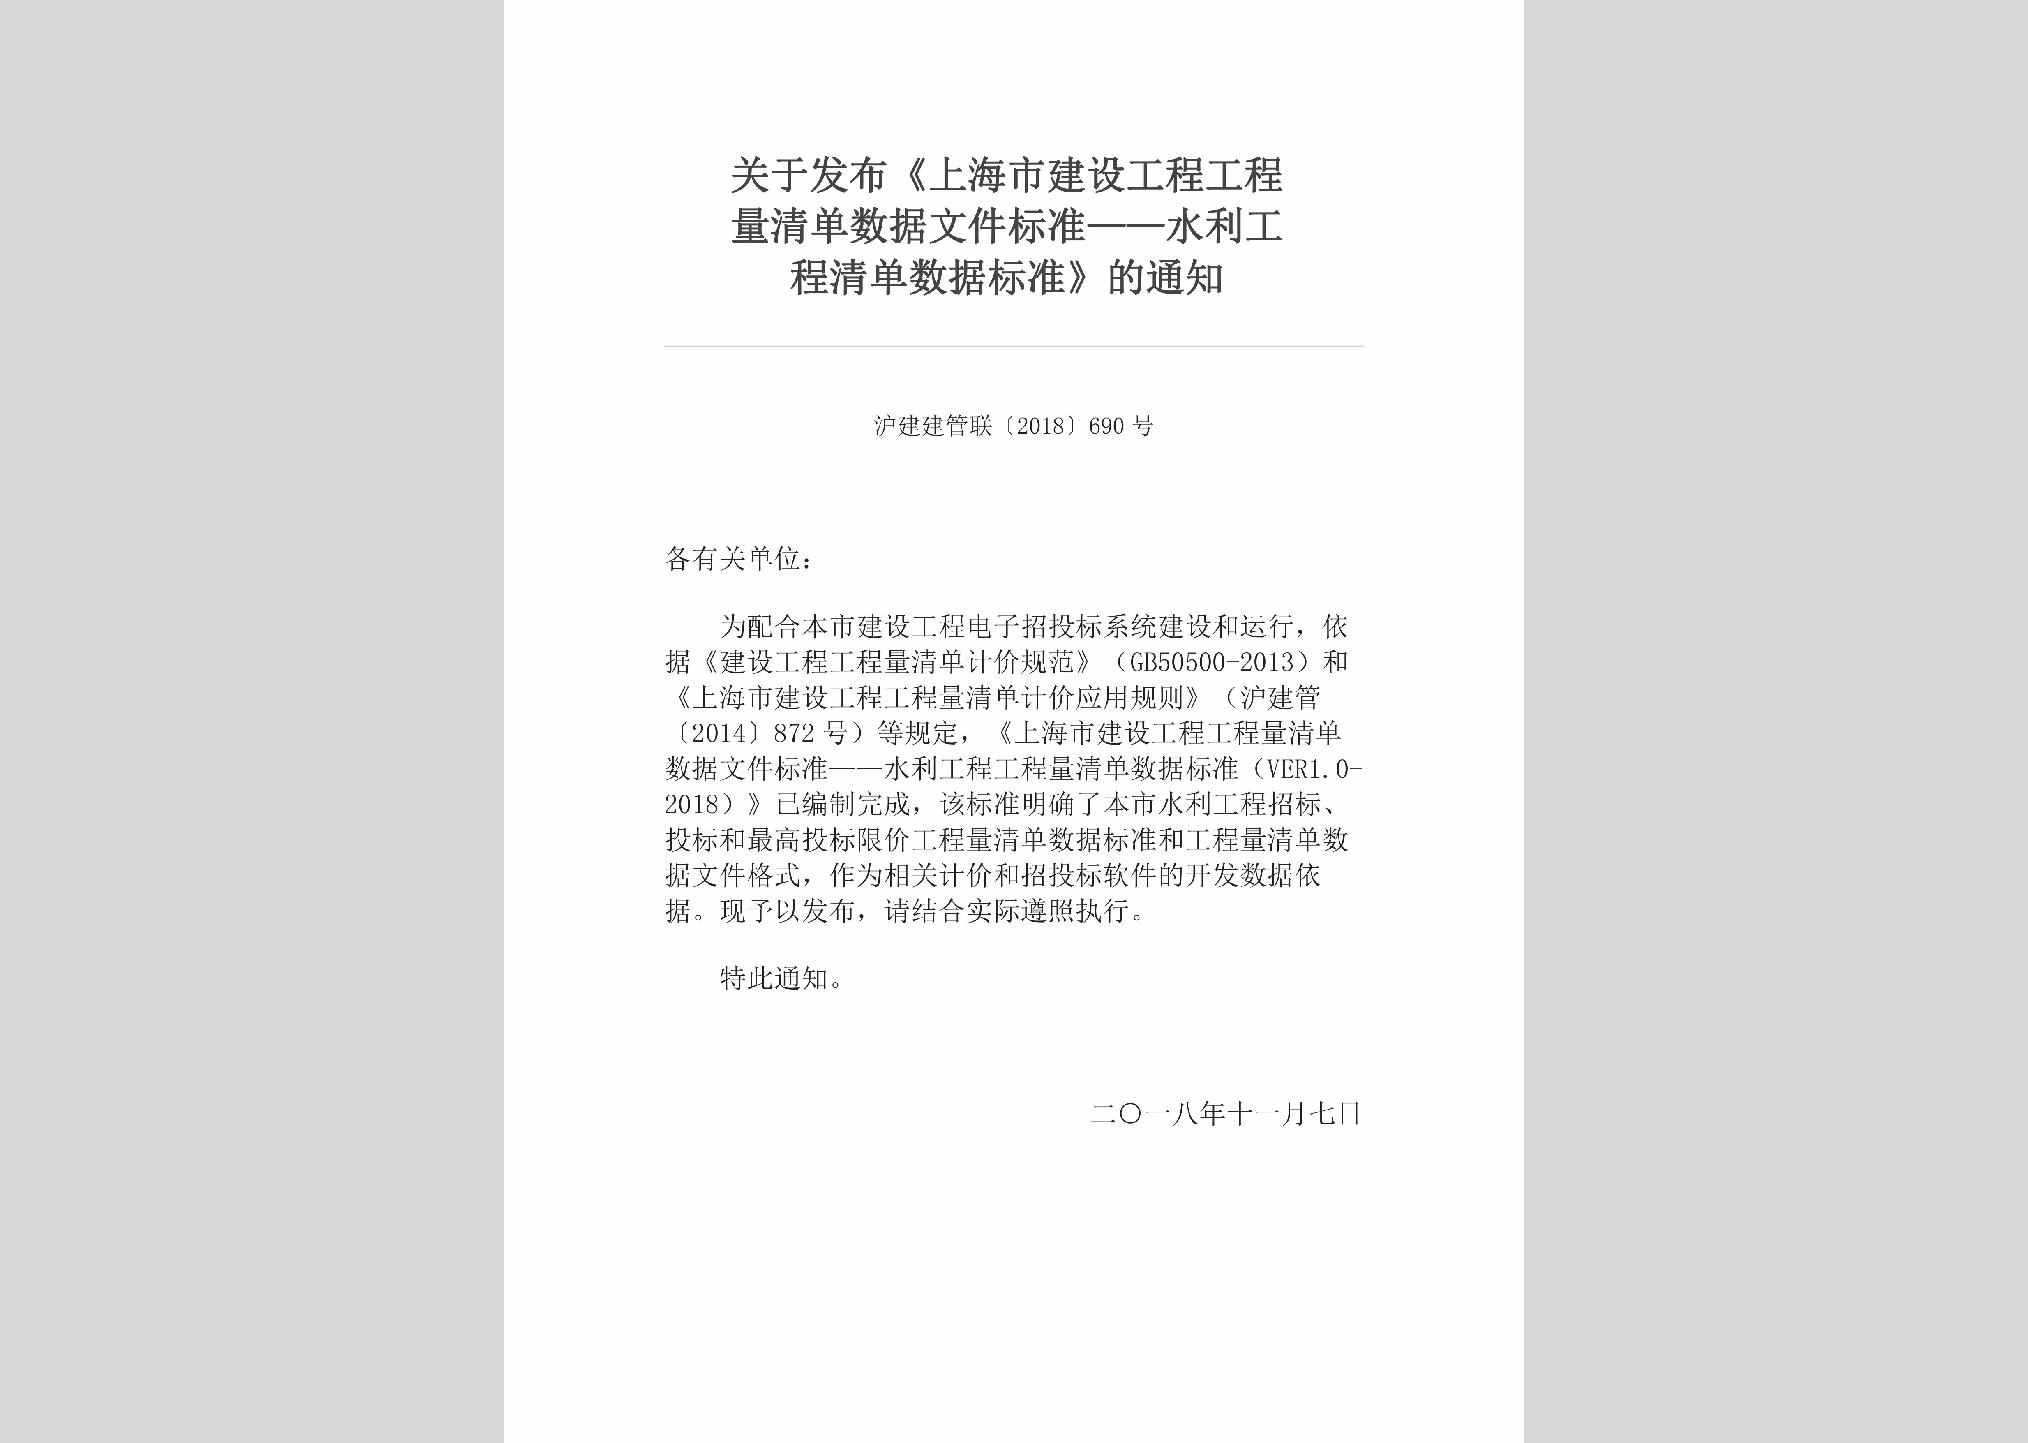 沪建建管联[2018]690号：关于发布《上海市建设工程工程量清单数据文件标准——水利工程清单数据标准》的通知